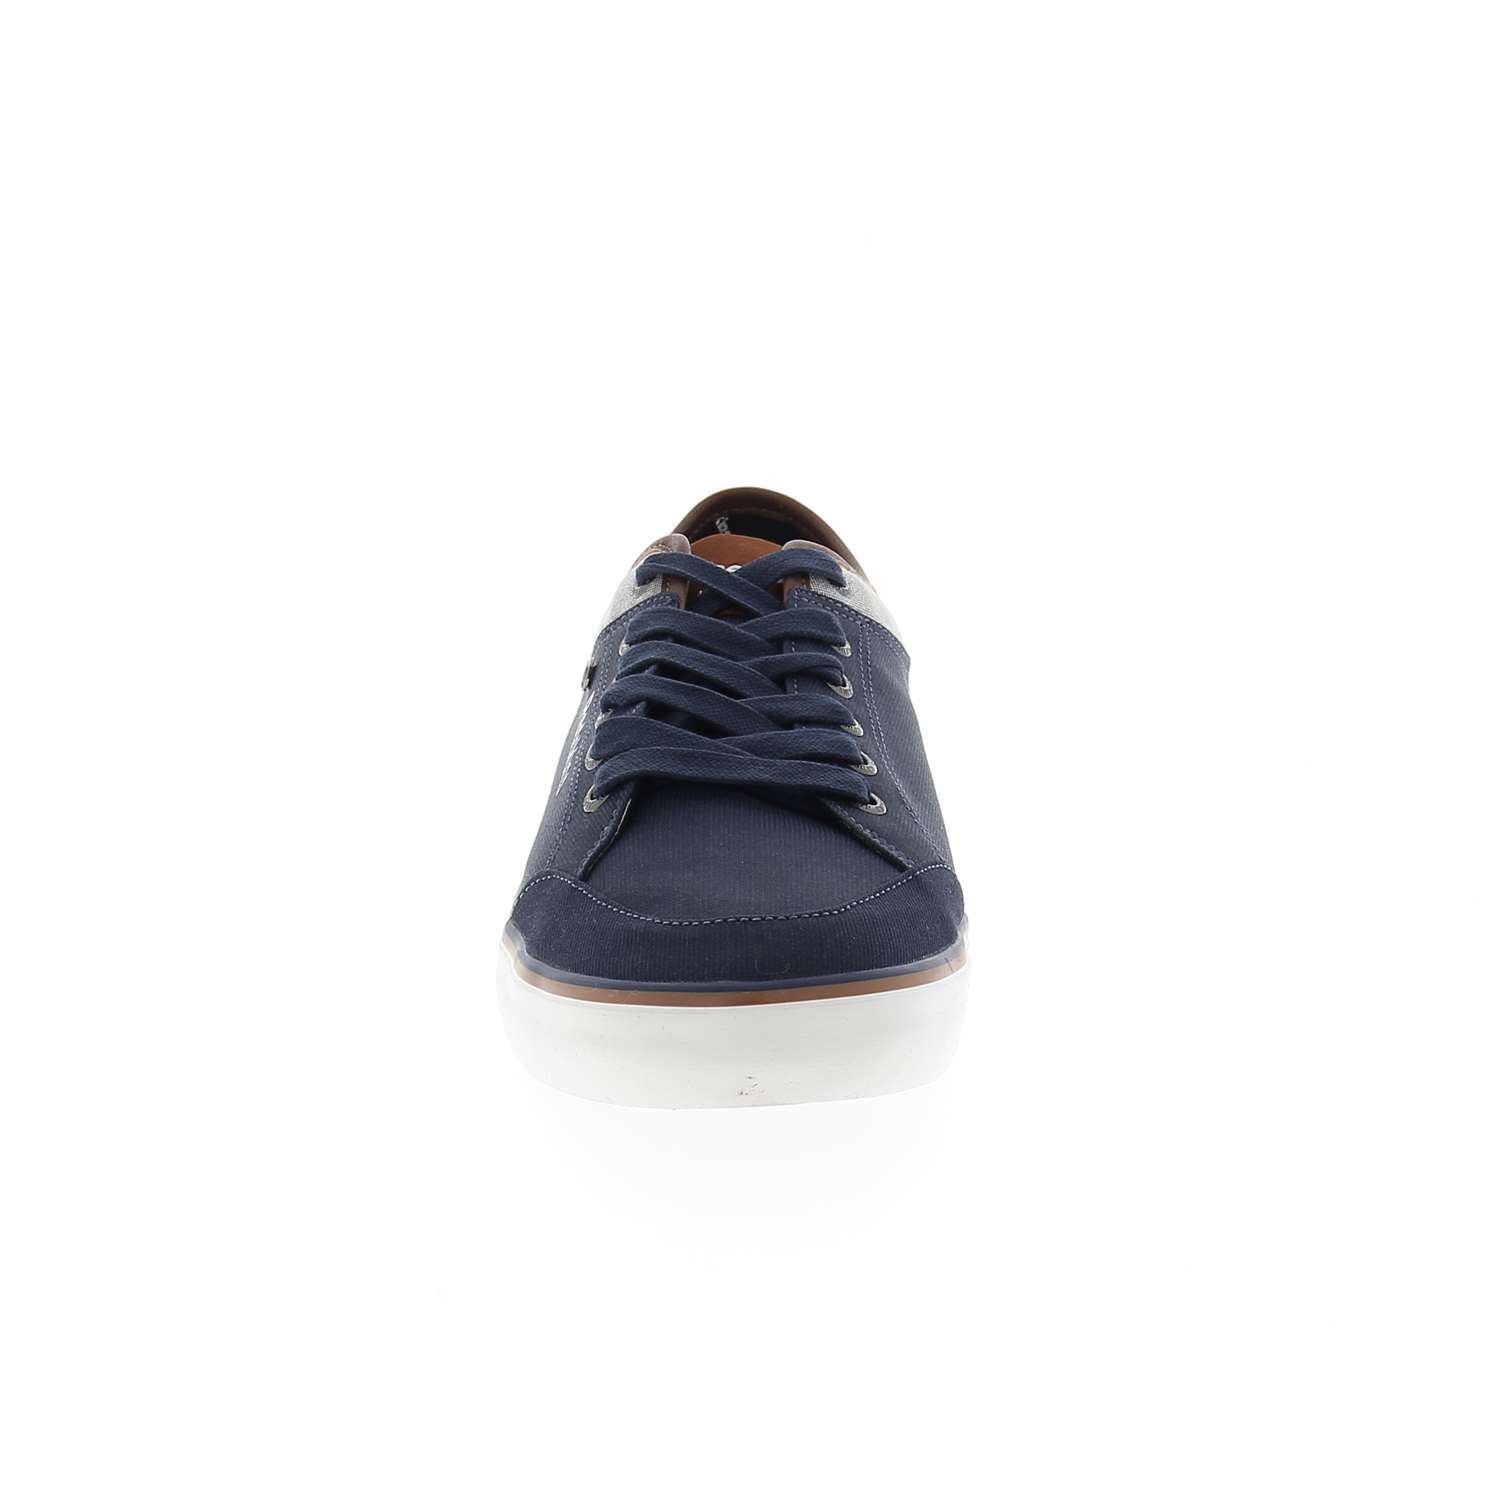 03 - GALETI - CLEON - Chaussures à lacets - Textile